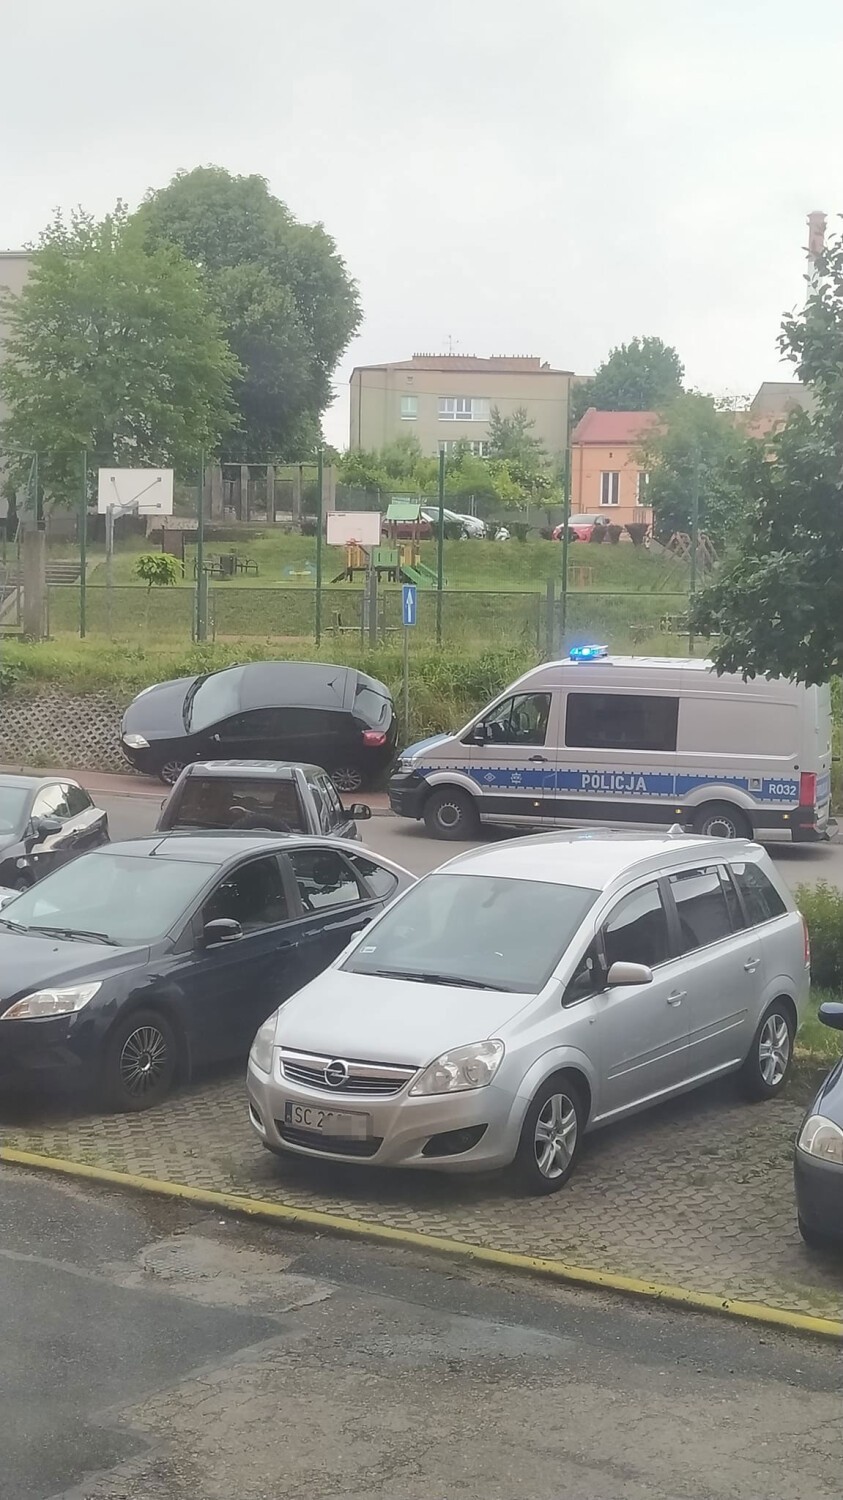 Przerażający wypadek przed szkołą w Częstochowie! Samochód bez kierowcy stoczył się na dziecko. Chłopczyk w ciężkim stanie!